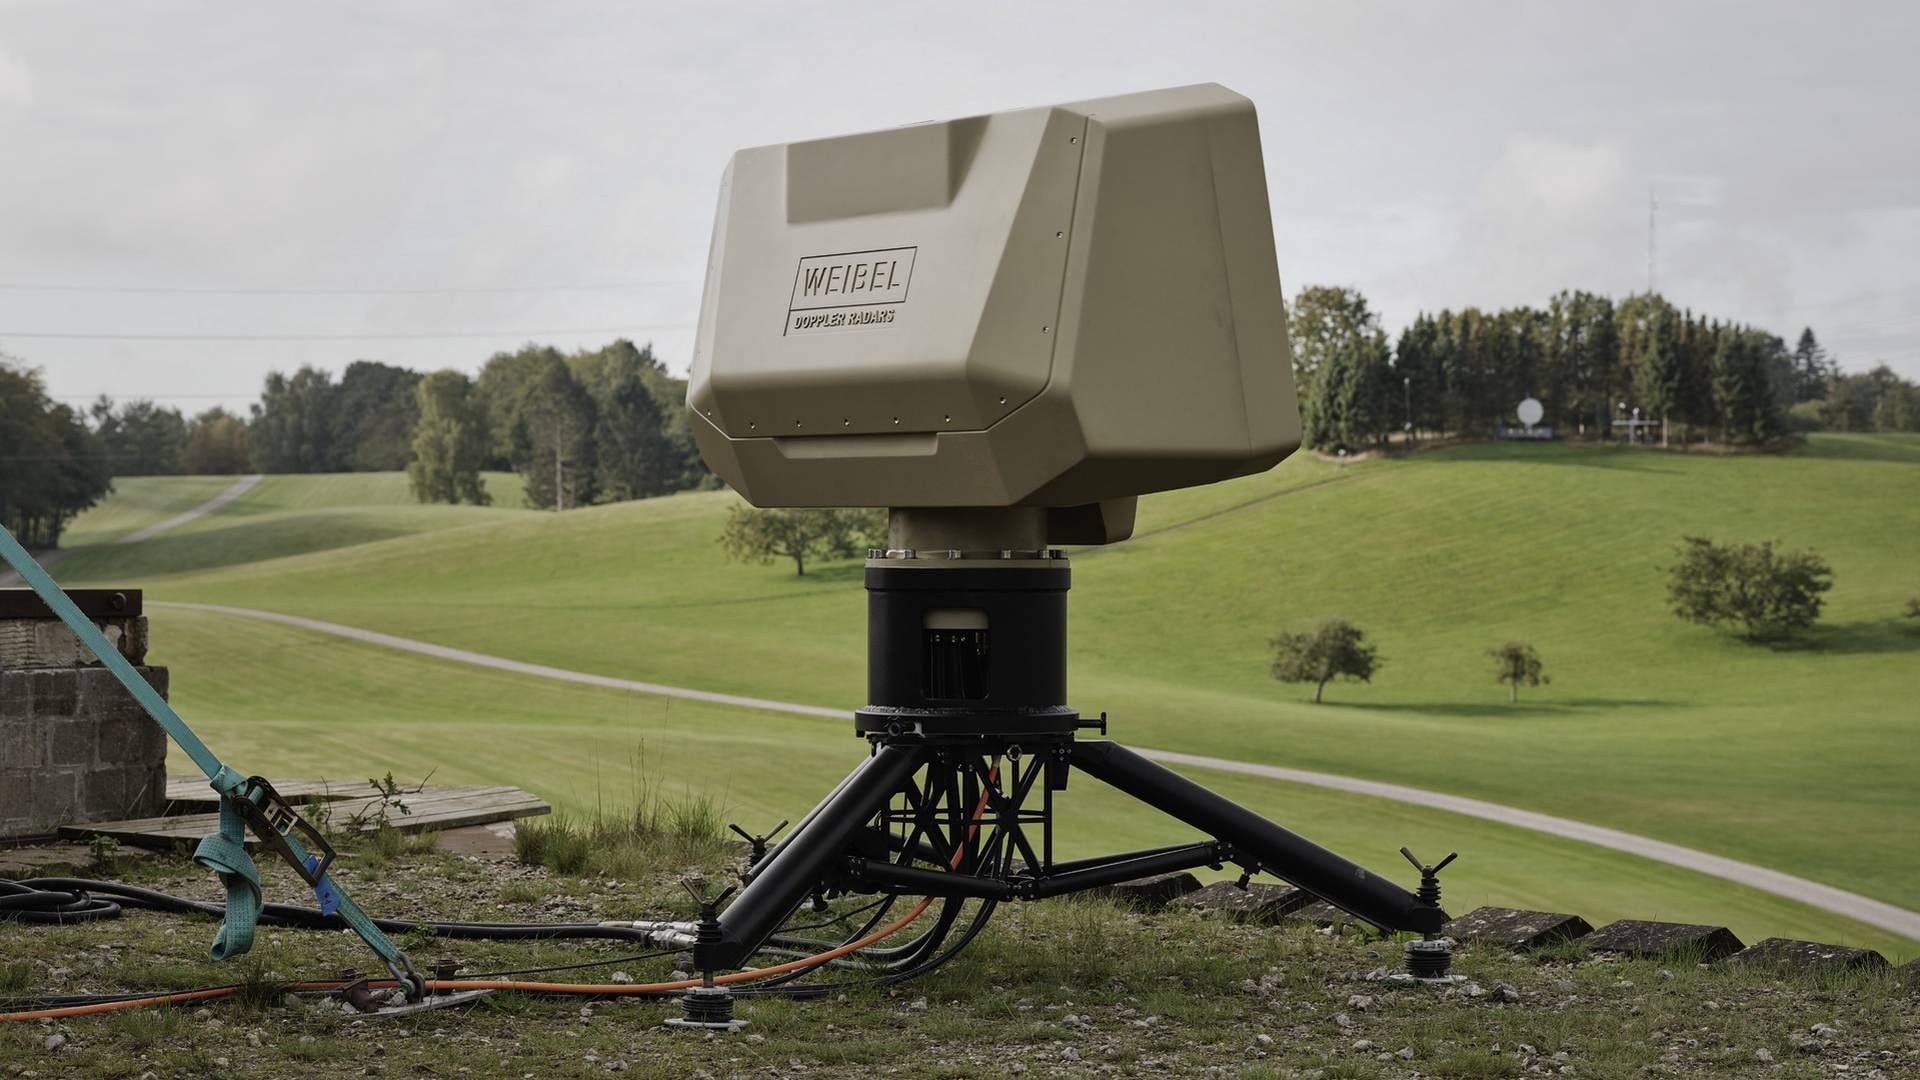 Nyudviklede radarer som denne, der kaldes Xenta, og som kan se droner og bruges til nærluftsforsvar, skal være med til at sikre væksten i Allerød-baserede Weibel Scientific. | Foto: Weibel Scientific / PR